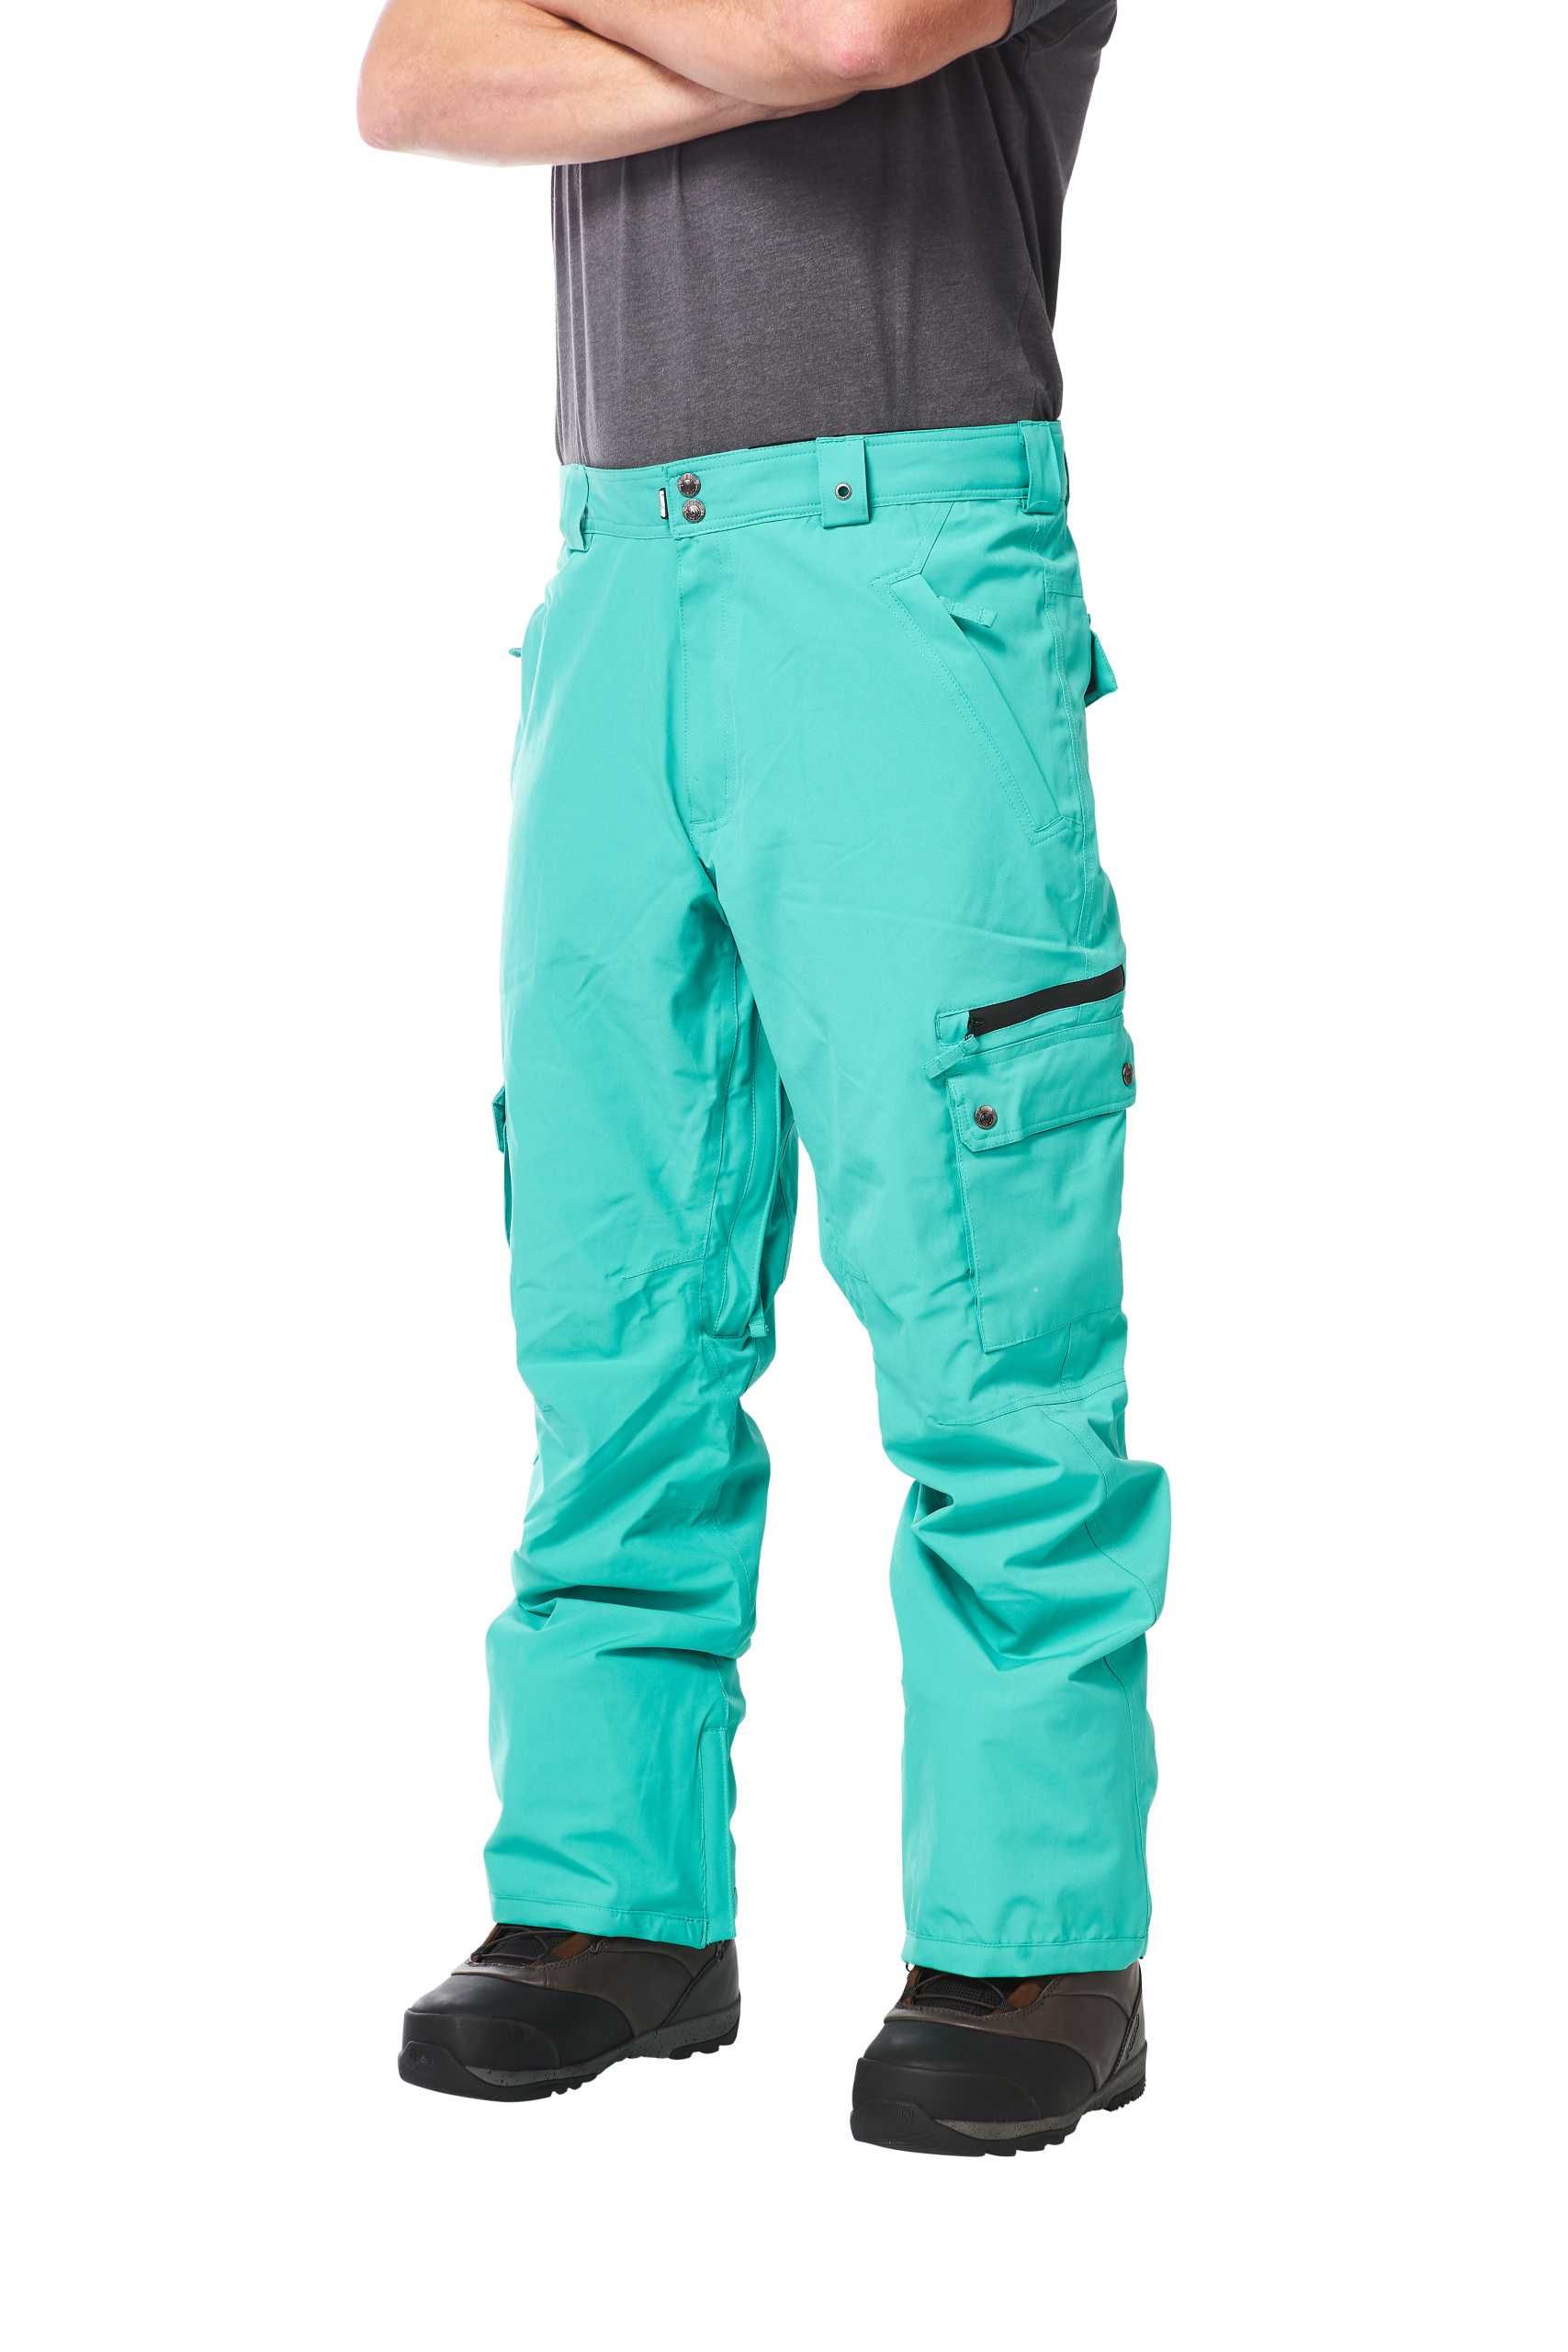 Light Fuse, 18k, XL, нов, оригинален мъжки ски/сноуборд панталон